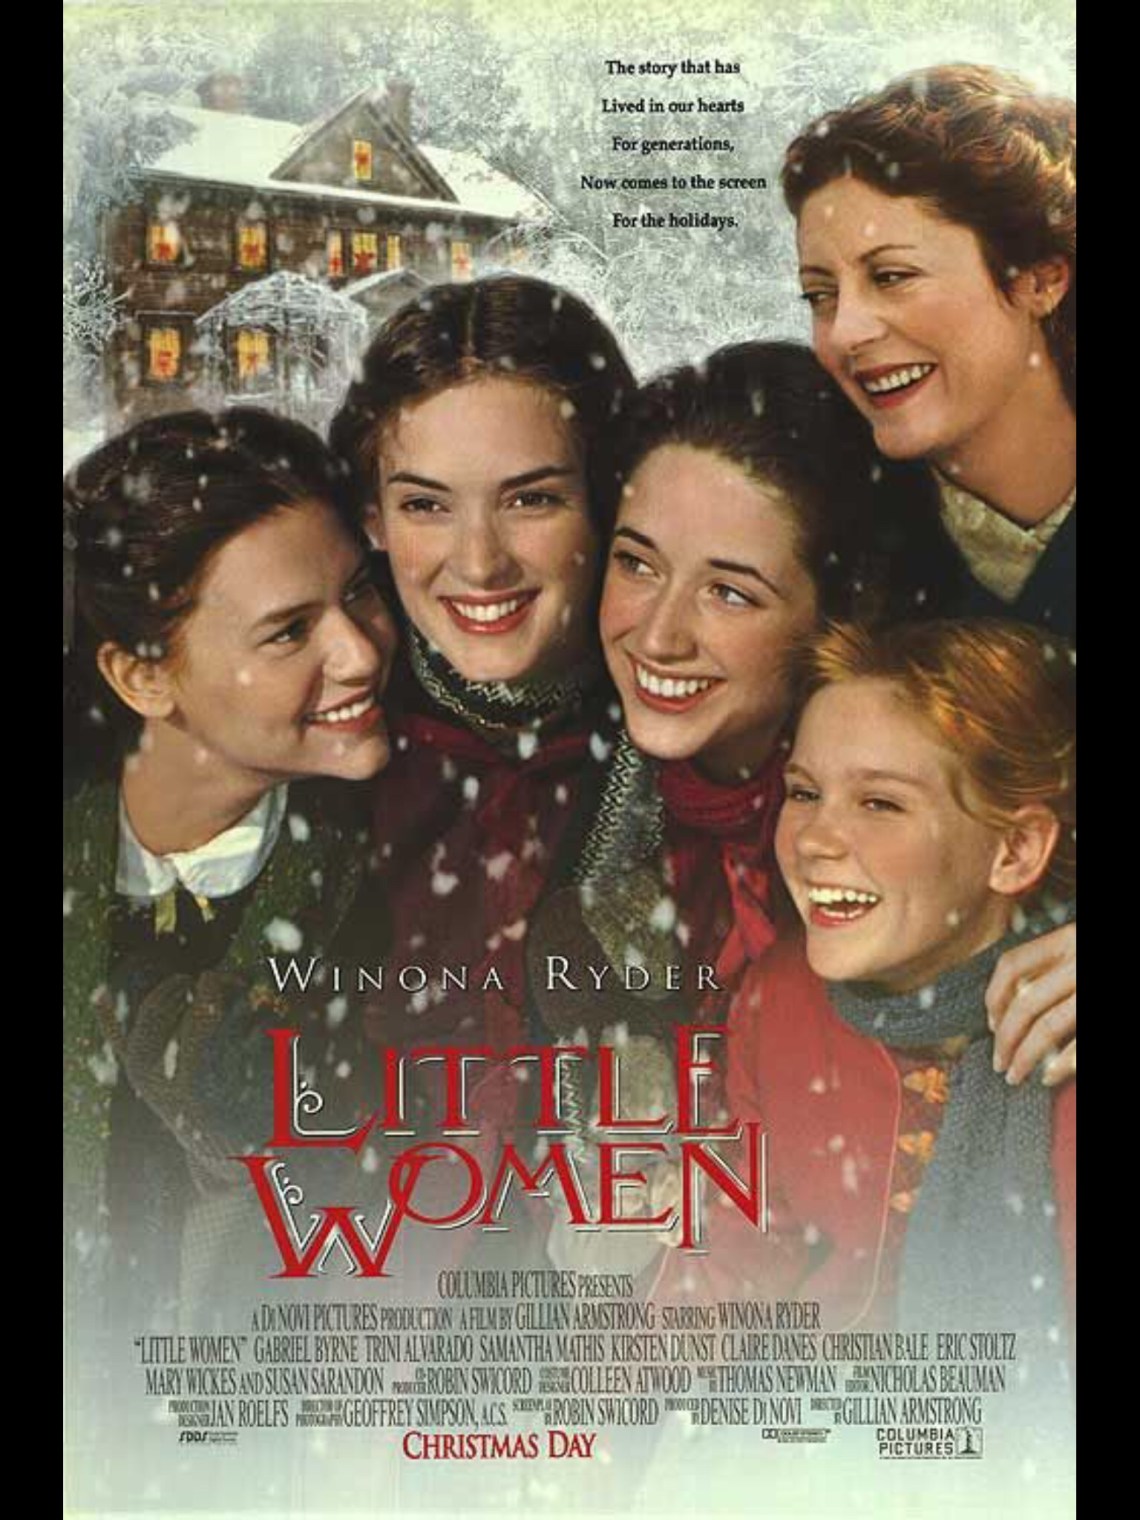 ดูหนังออนไลน์ฟรี Little Women 1994 สี่ดรุณี ดูหนังใหม่ออนไลน์